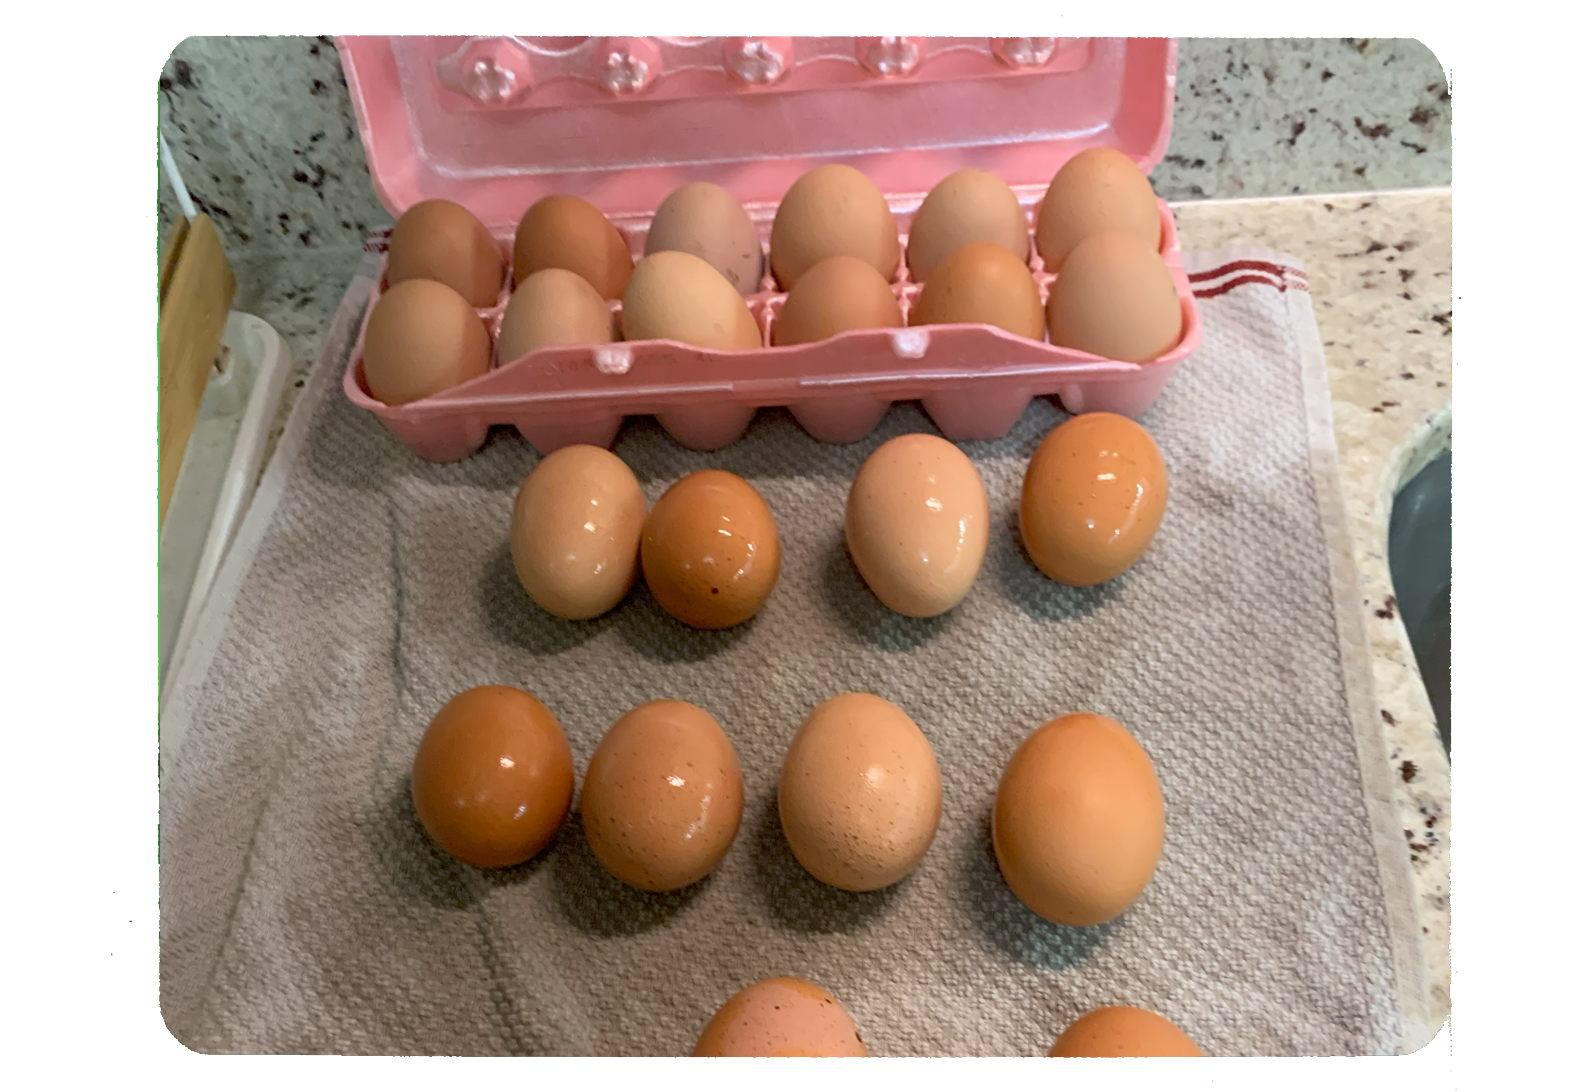 more than a dozen eggs on the counter